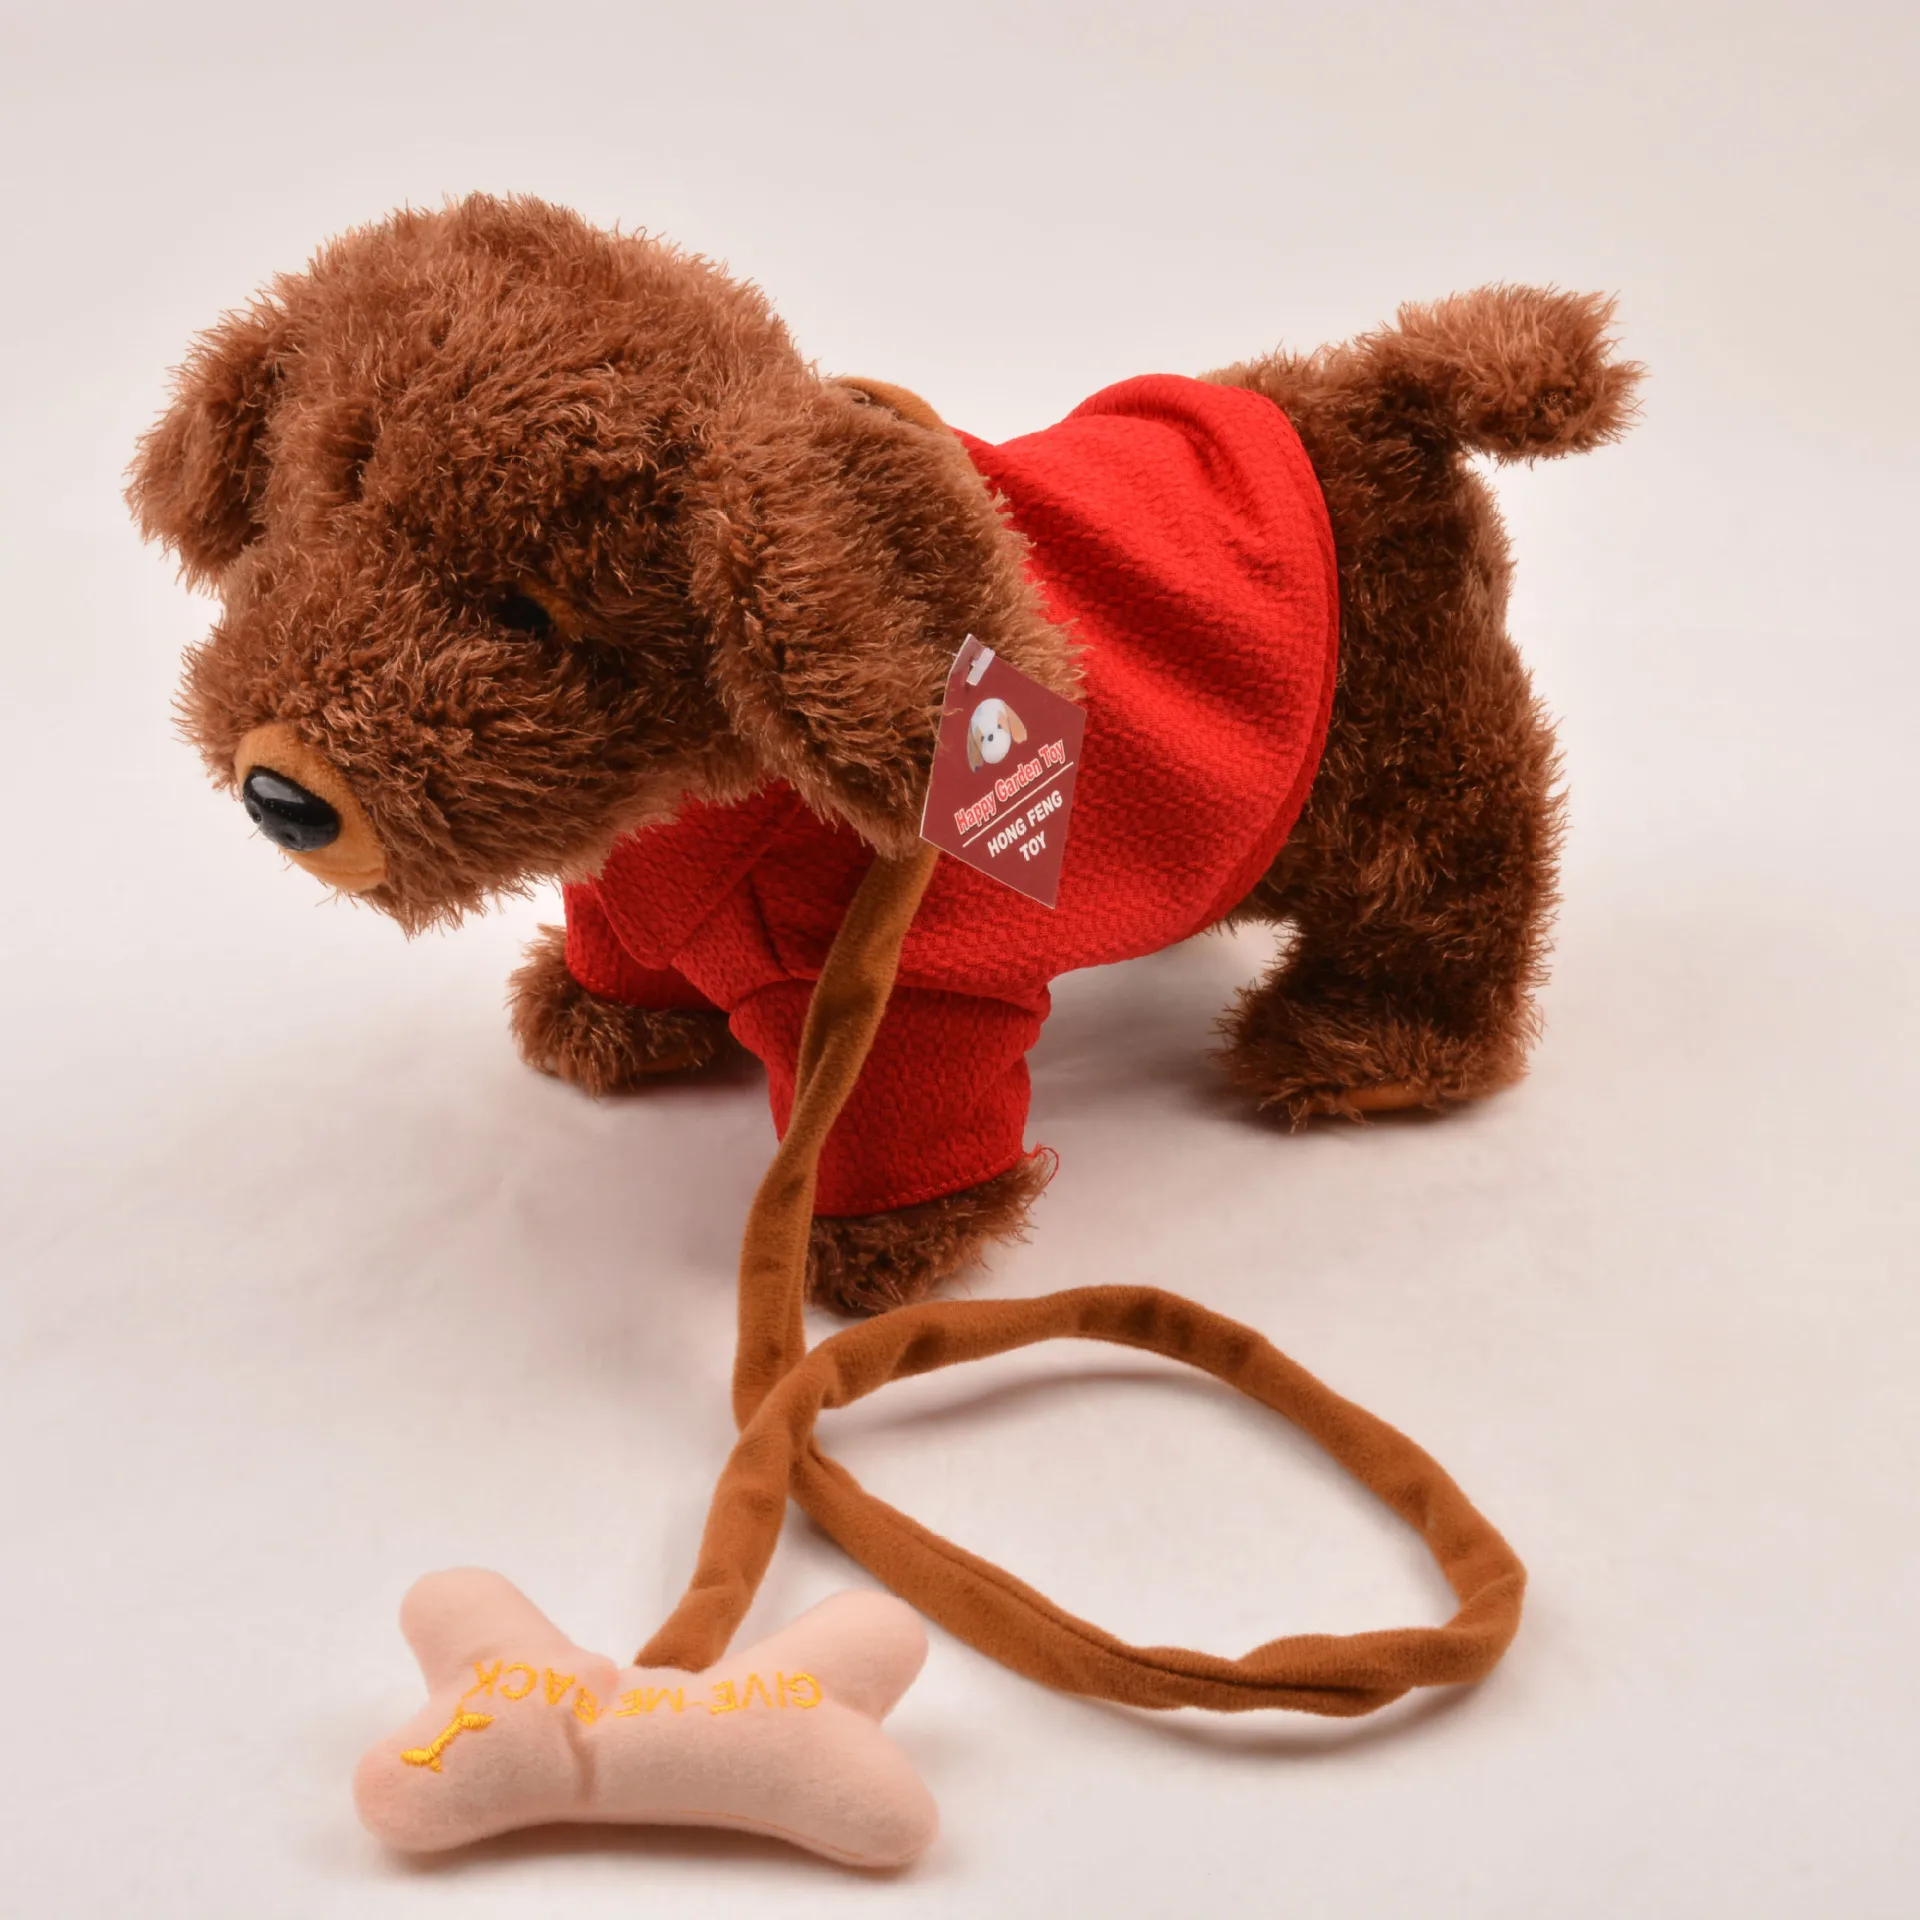 Электронная музыкальная игрушечная плюшевая собака ходьбы Shengtai Di игрушечная собака будут петь 10 песен для детей, для маленьких детей подарок на день рождения